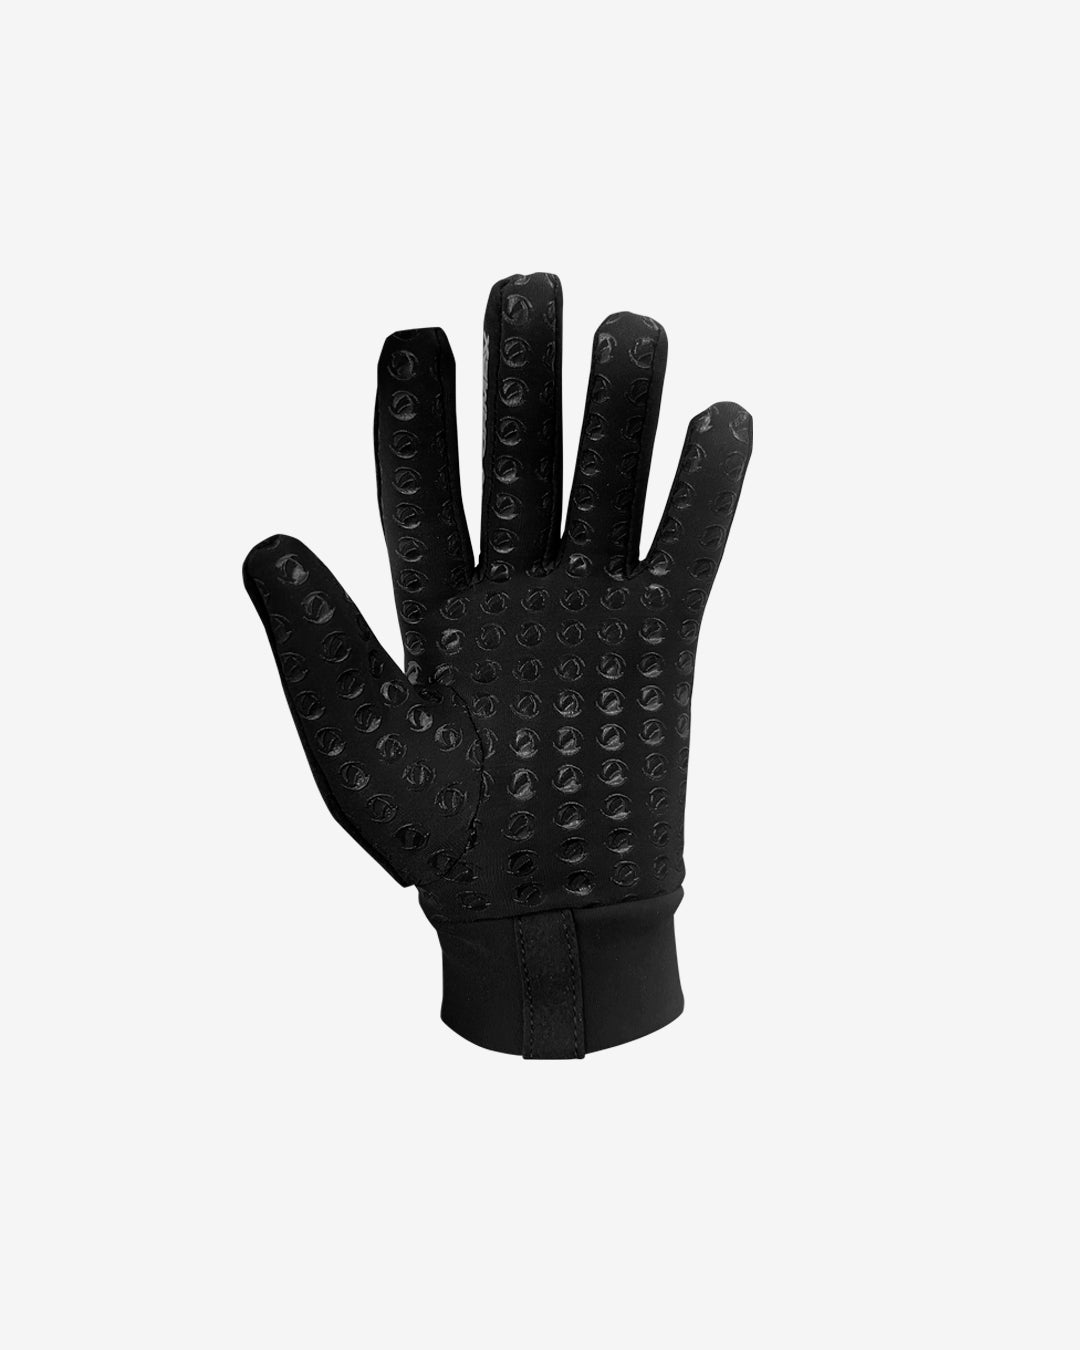 Performex Grippa Gloves